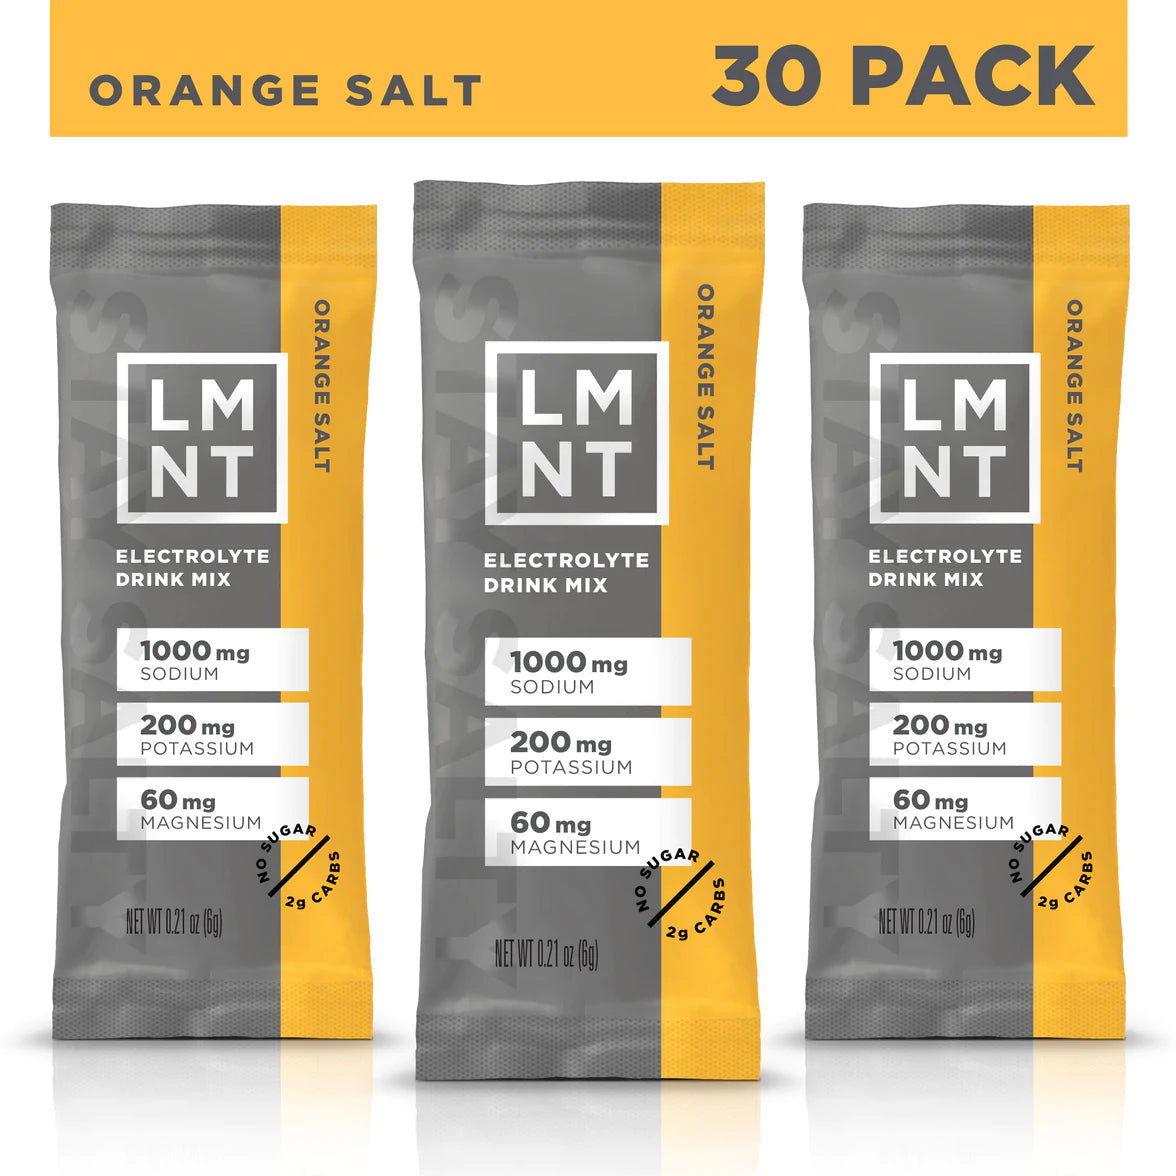 LMNT Orange Salt Electrolyte Drink Mix - 30 Count